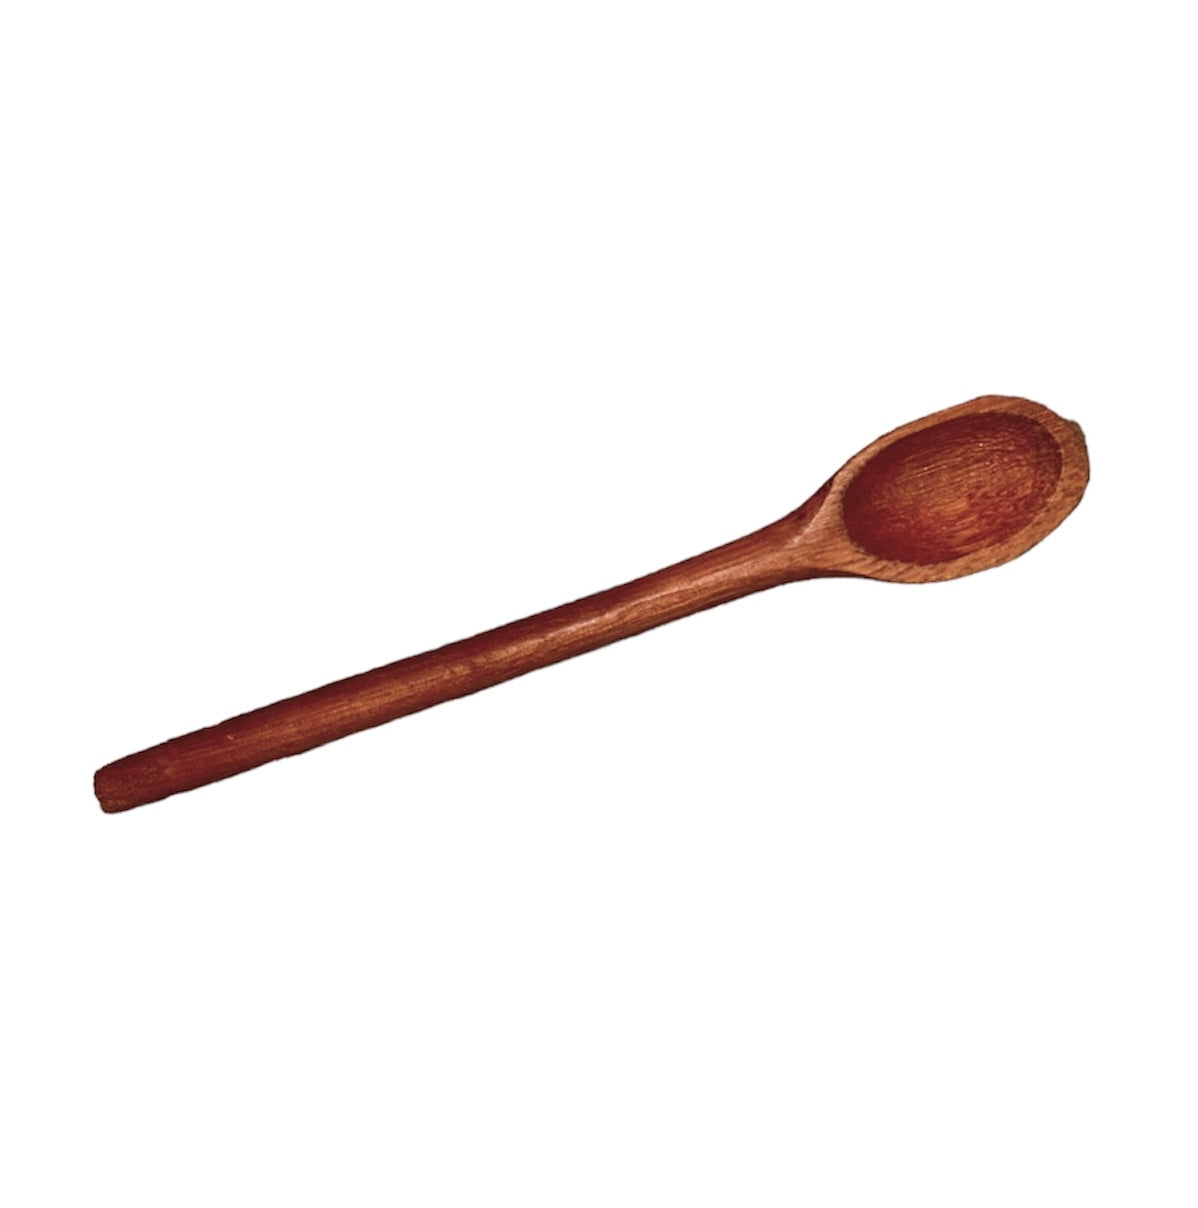 Colher de pau / wooden spoon